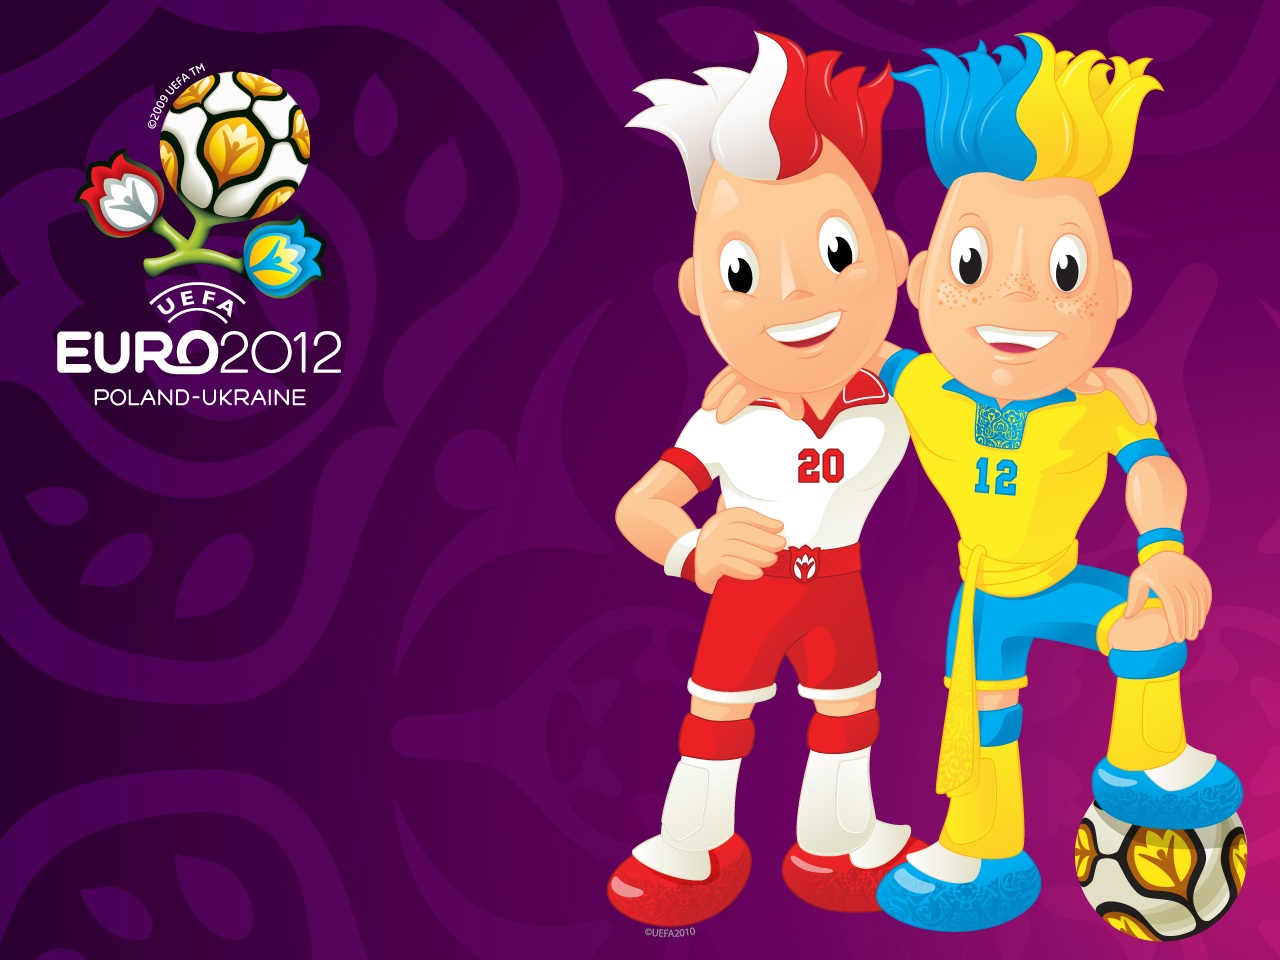 Oλα όσα πρέπει να ξέρετε για το Euro 2012